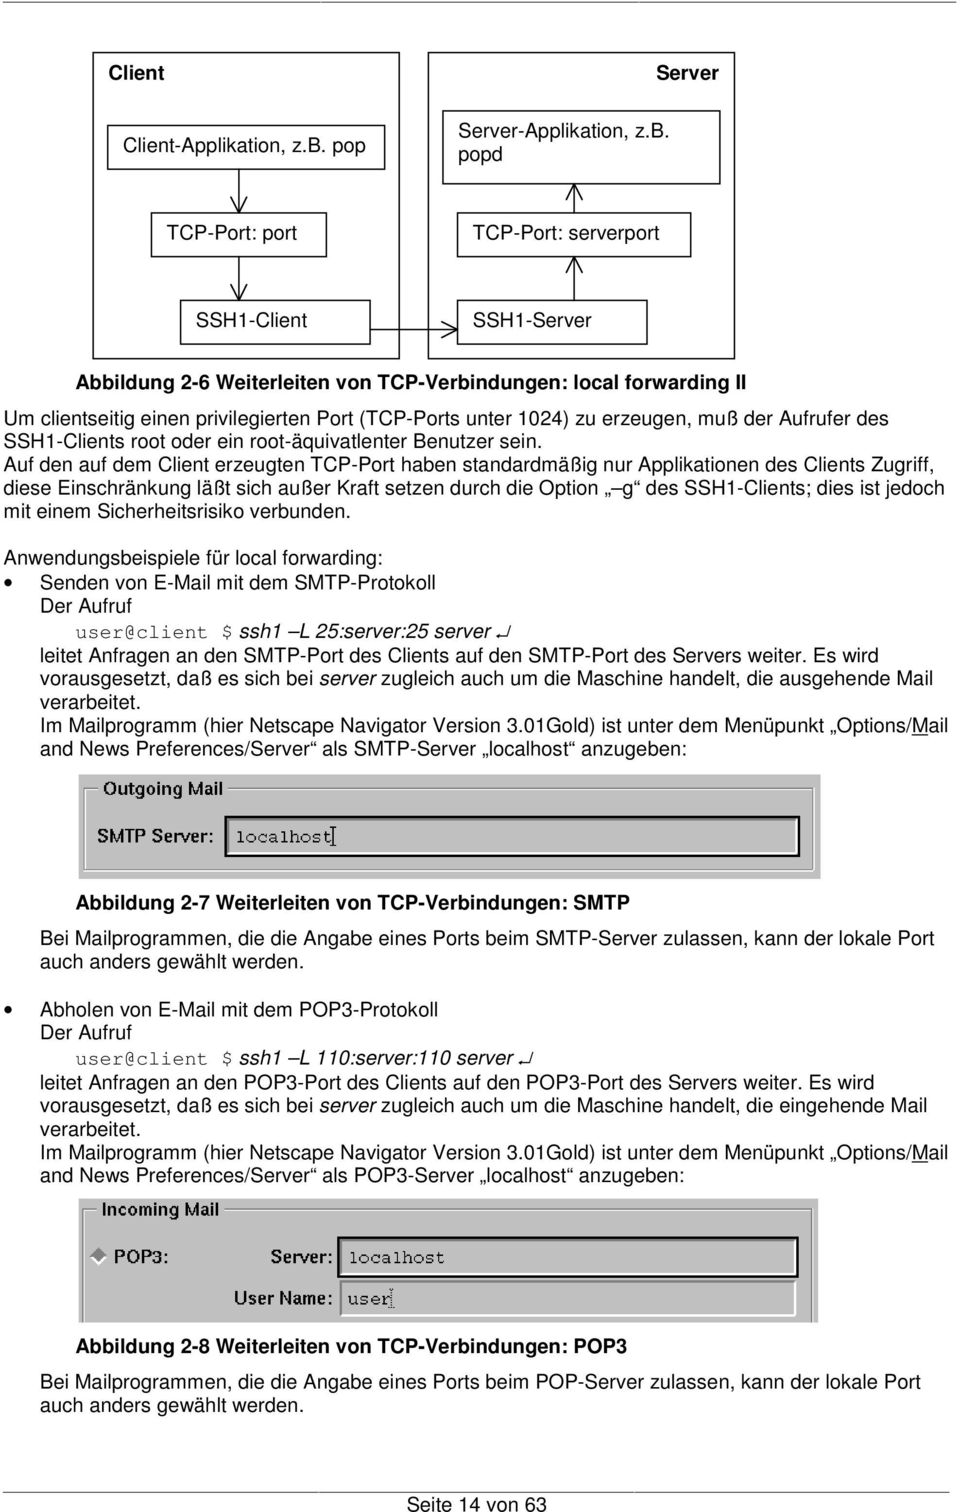 popd Server TCP-Port: port TCP-Port: serverport SSH1-Client SSH1-Server Abbildung 2-6 Weiterleiten von TCP-Verbindungen: local forwarding II Um clientseitig einen privilegierten Port (TCP-Ports unter